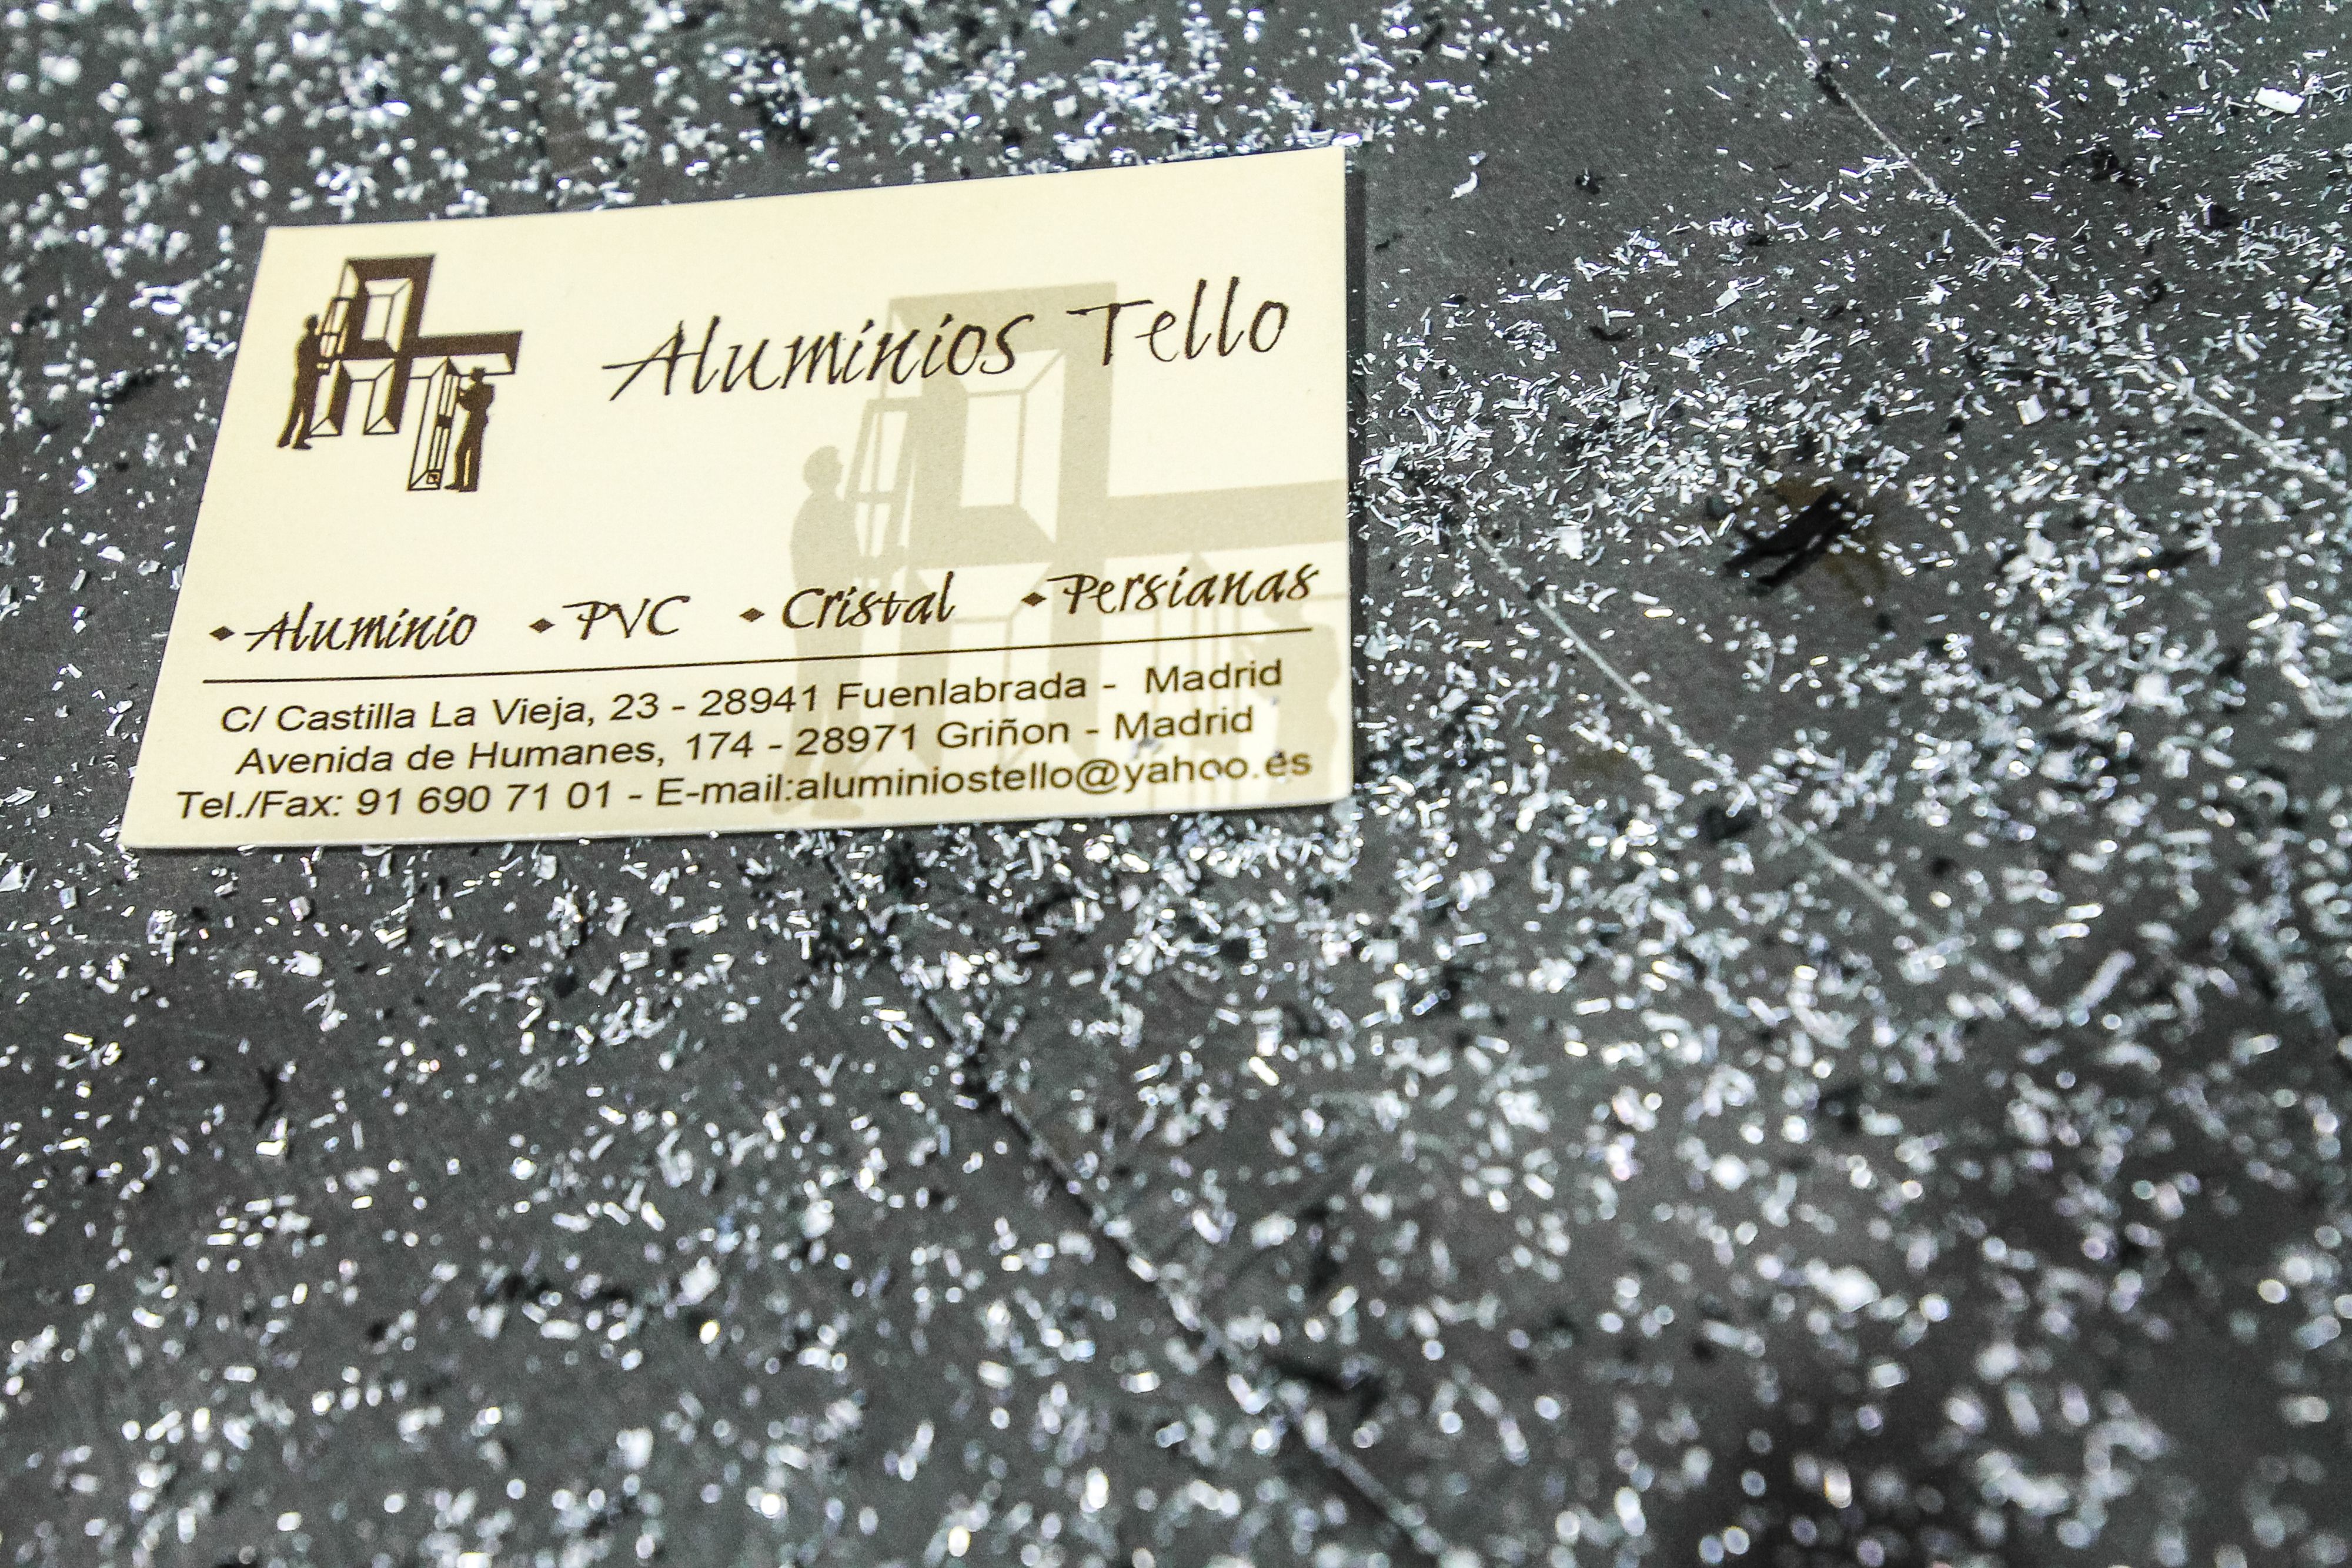 Foto 6 de Aluminio en Fuenlabrada | Aluminios Tello